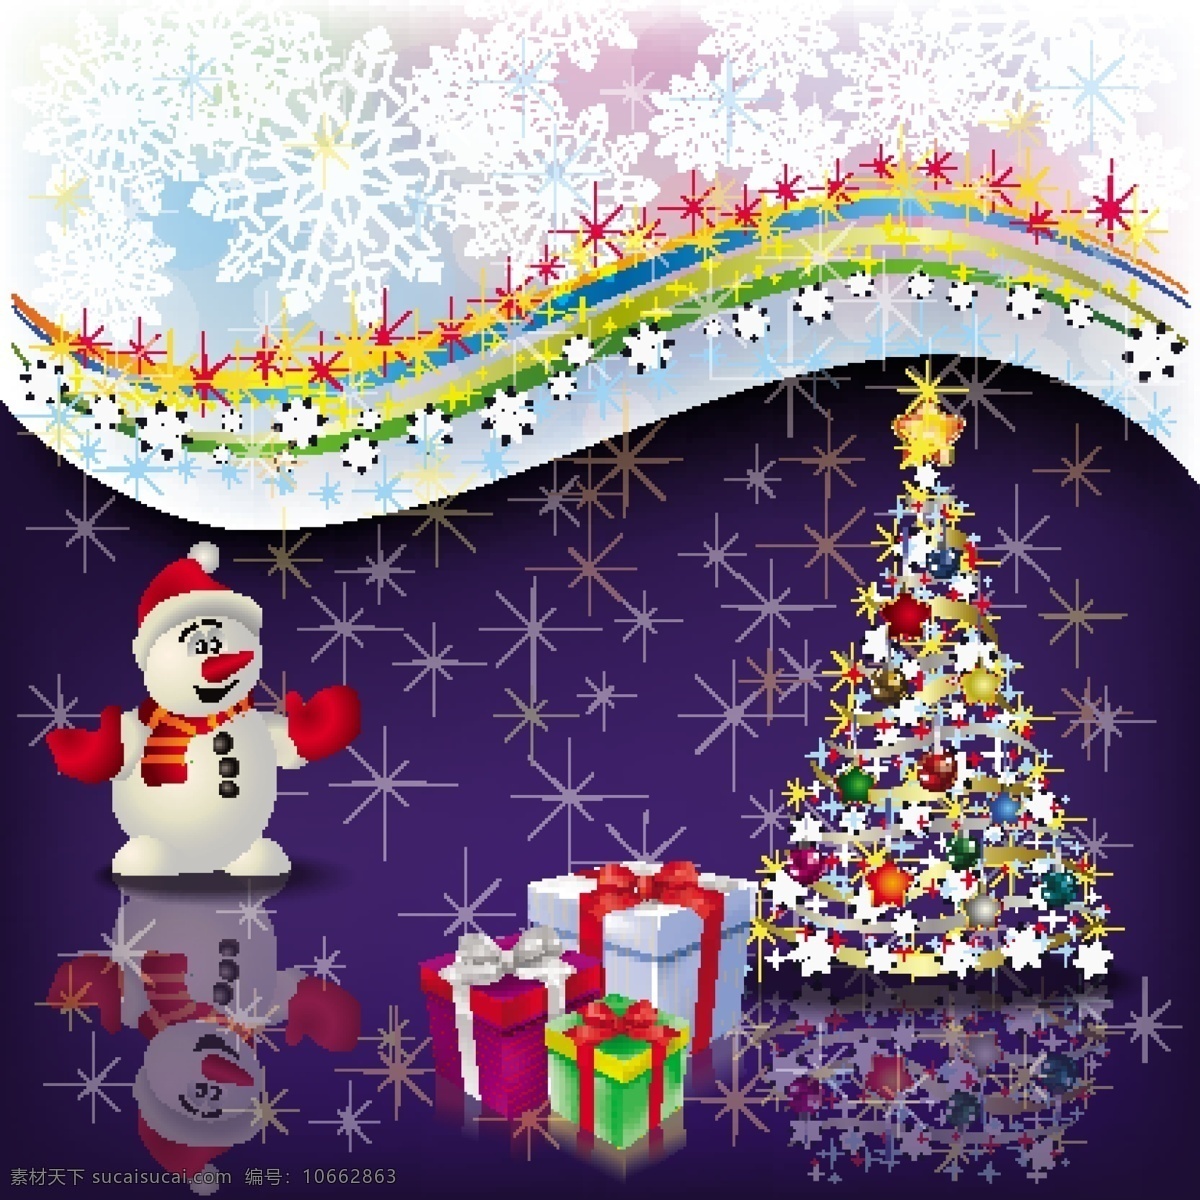 矢量 精美 圣诞 星光 闪烁 背景 光晕 铃铛 圣诞树 圣诞物品 星光闪烁 氛围 节日素材 其他节日